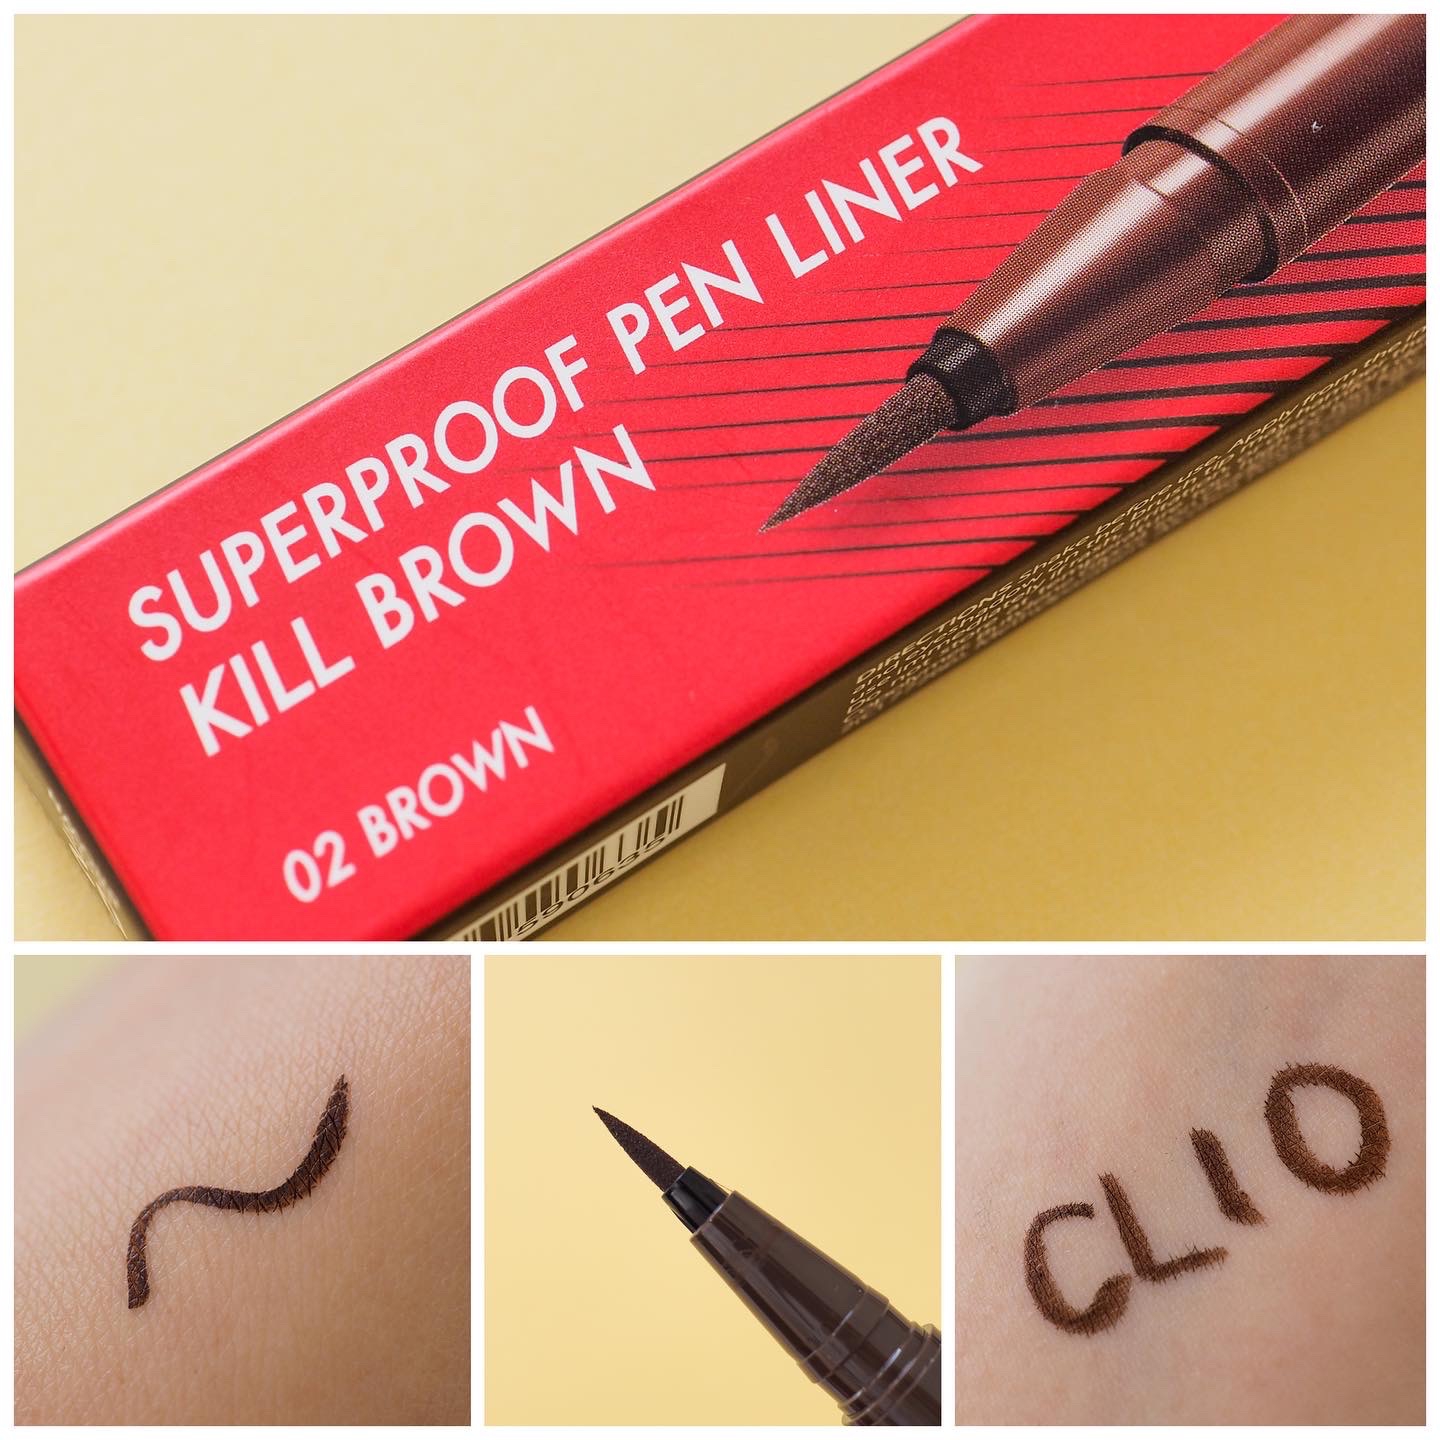 CLIO(クリオ) スーパープルーフ ペン ライナーの良い点・メリットに関するaquaさんの口コミ画像3